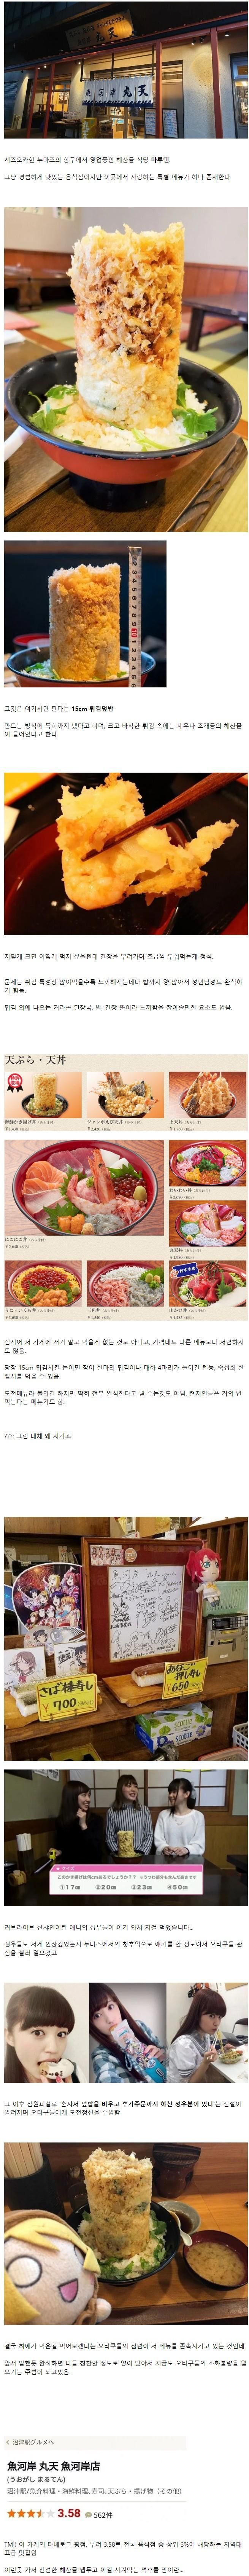 6 일본 식당의 씹덕저격 도전메뉴.jpg